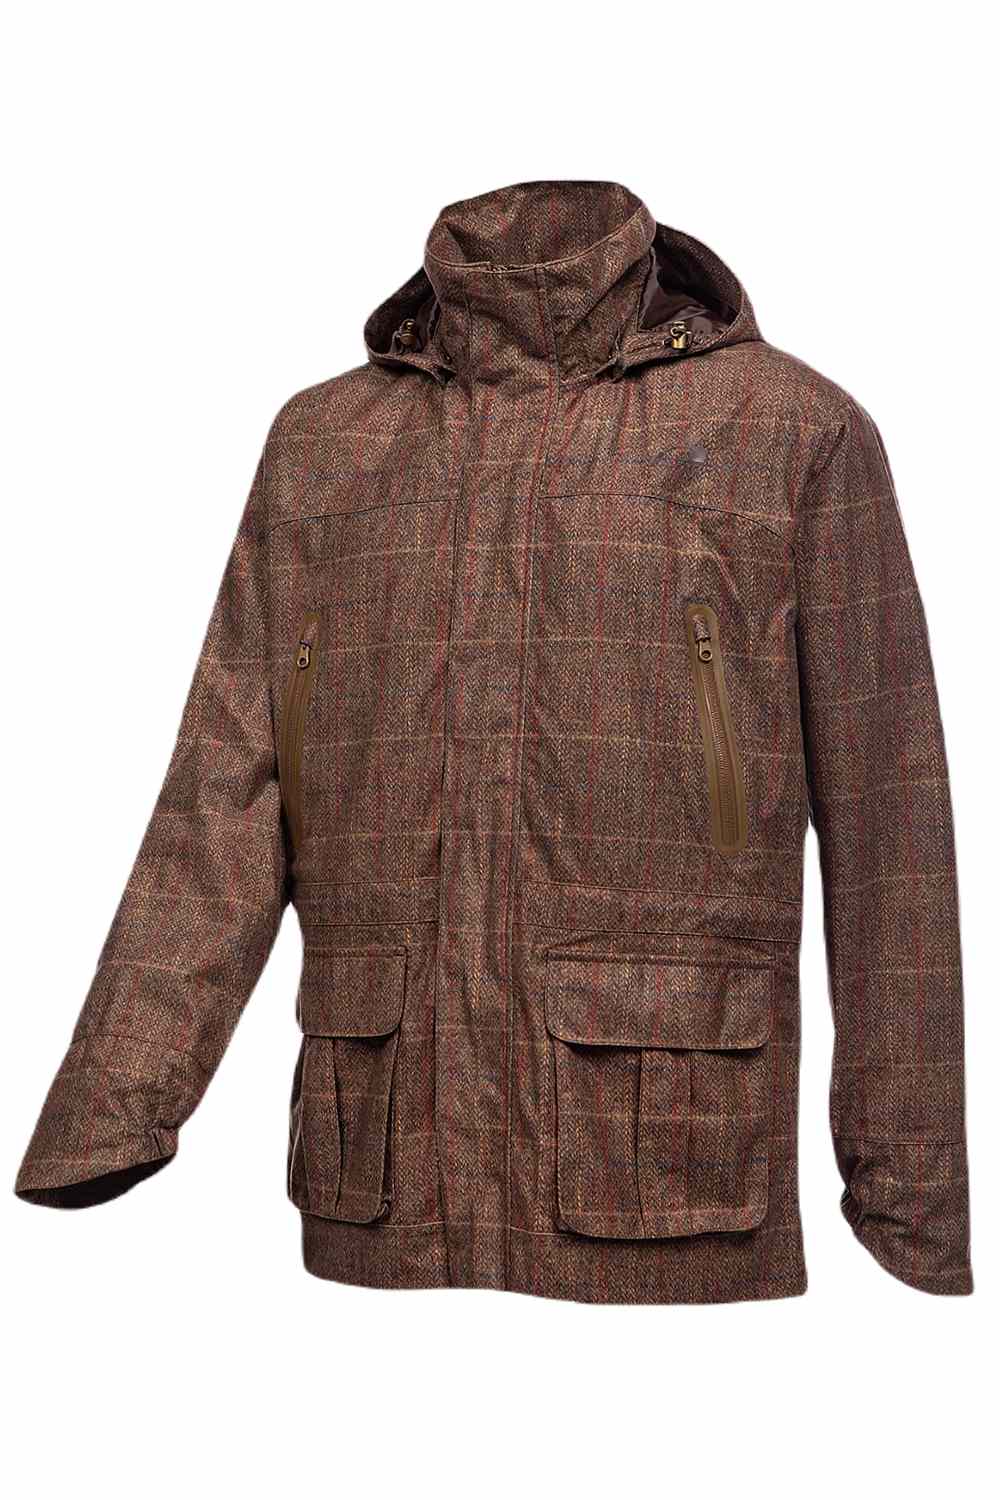 Baleno Moorland Waterproof Jacket In Check Brown 